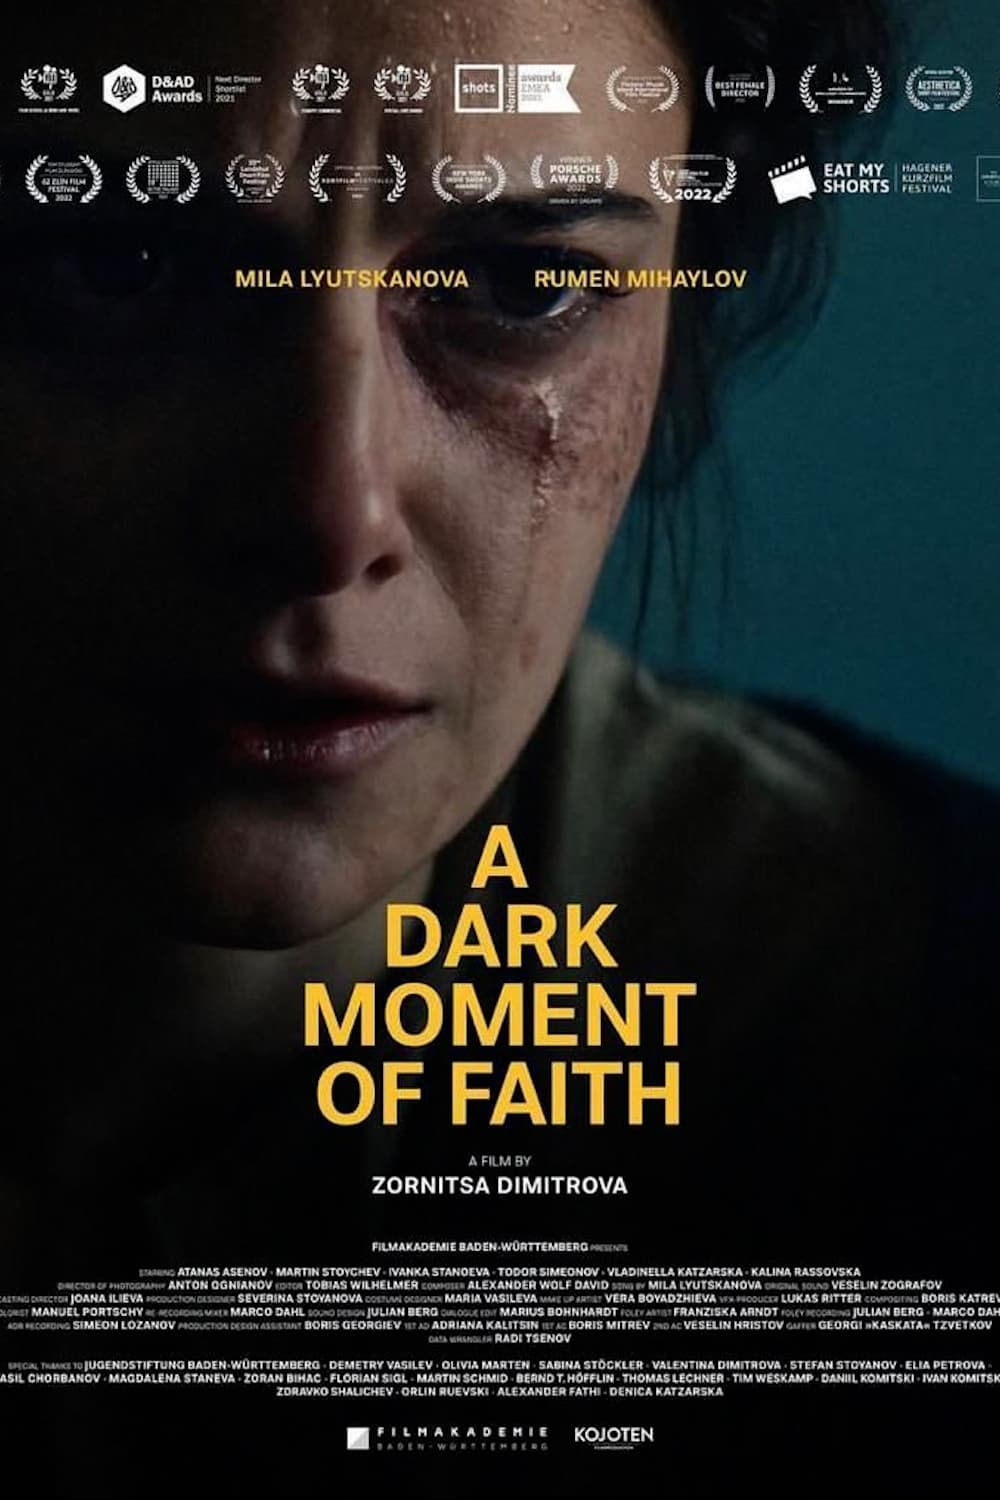 A Dark Moment of Faith